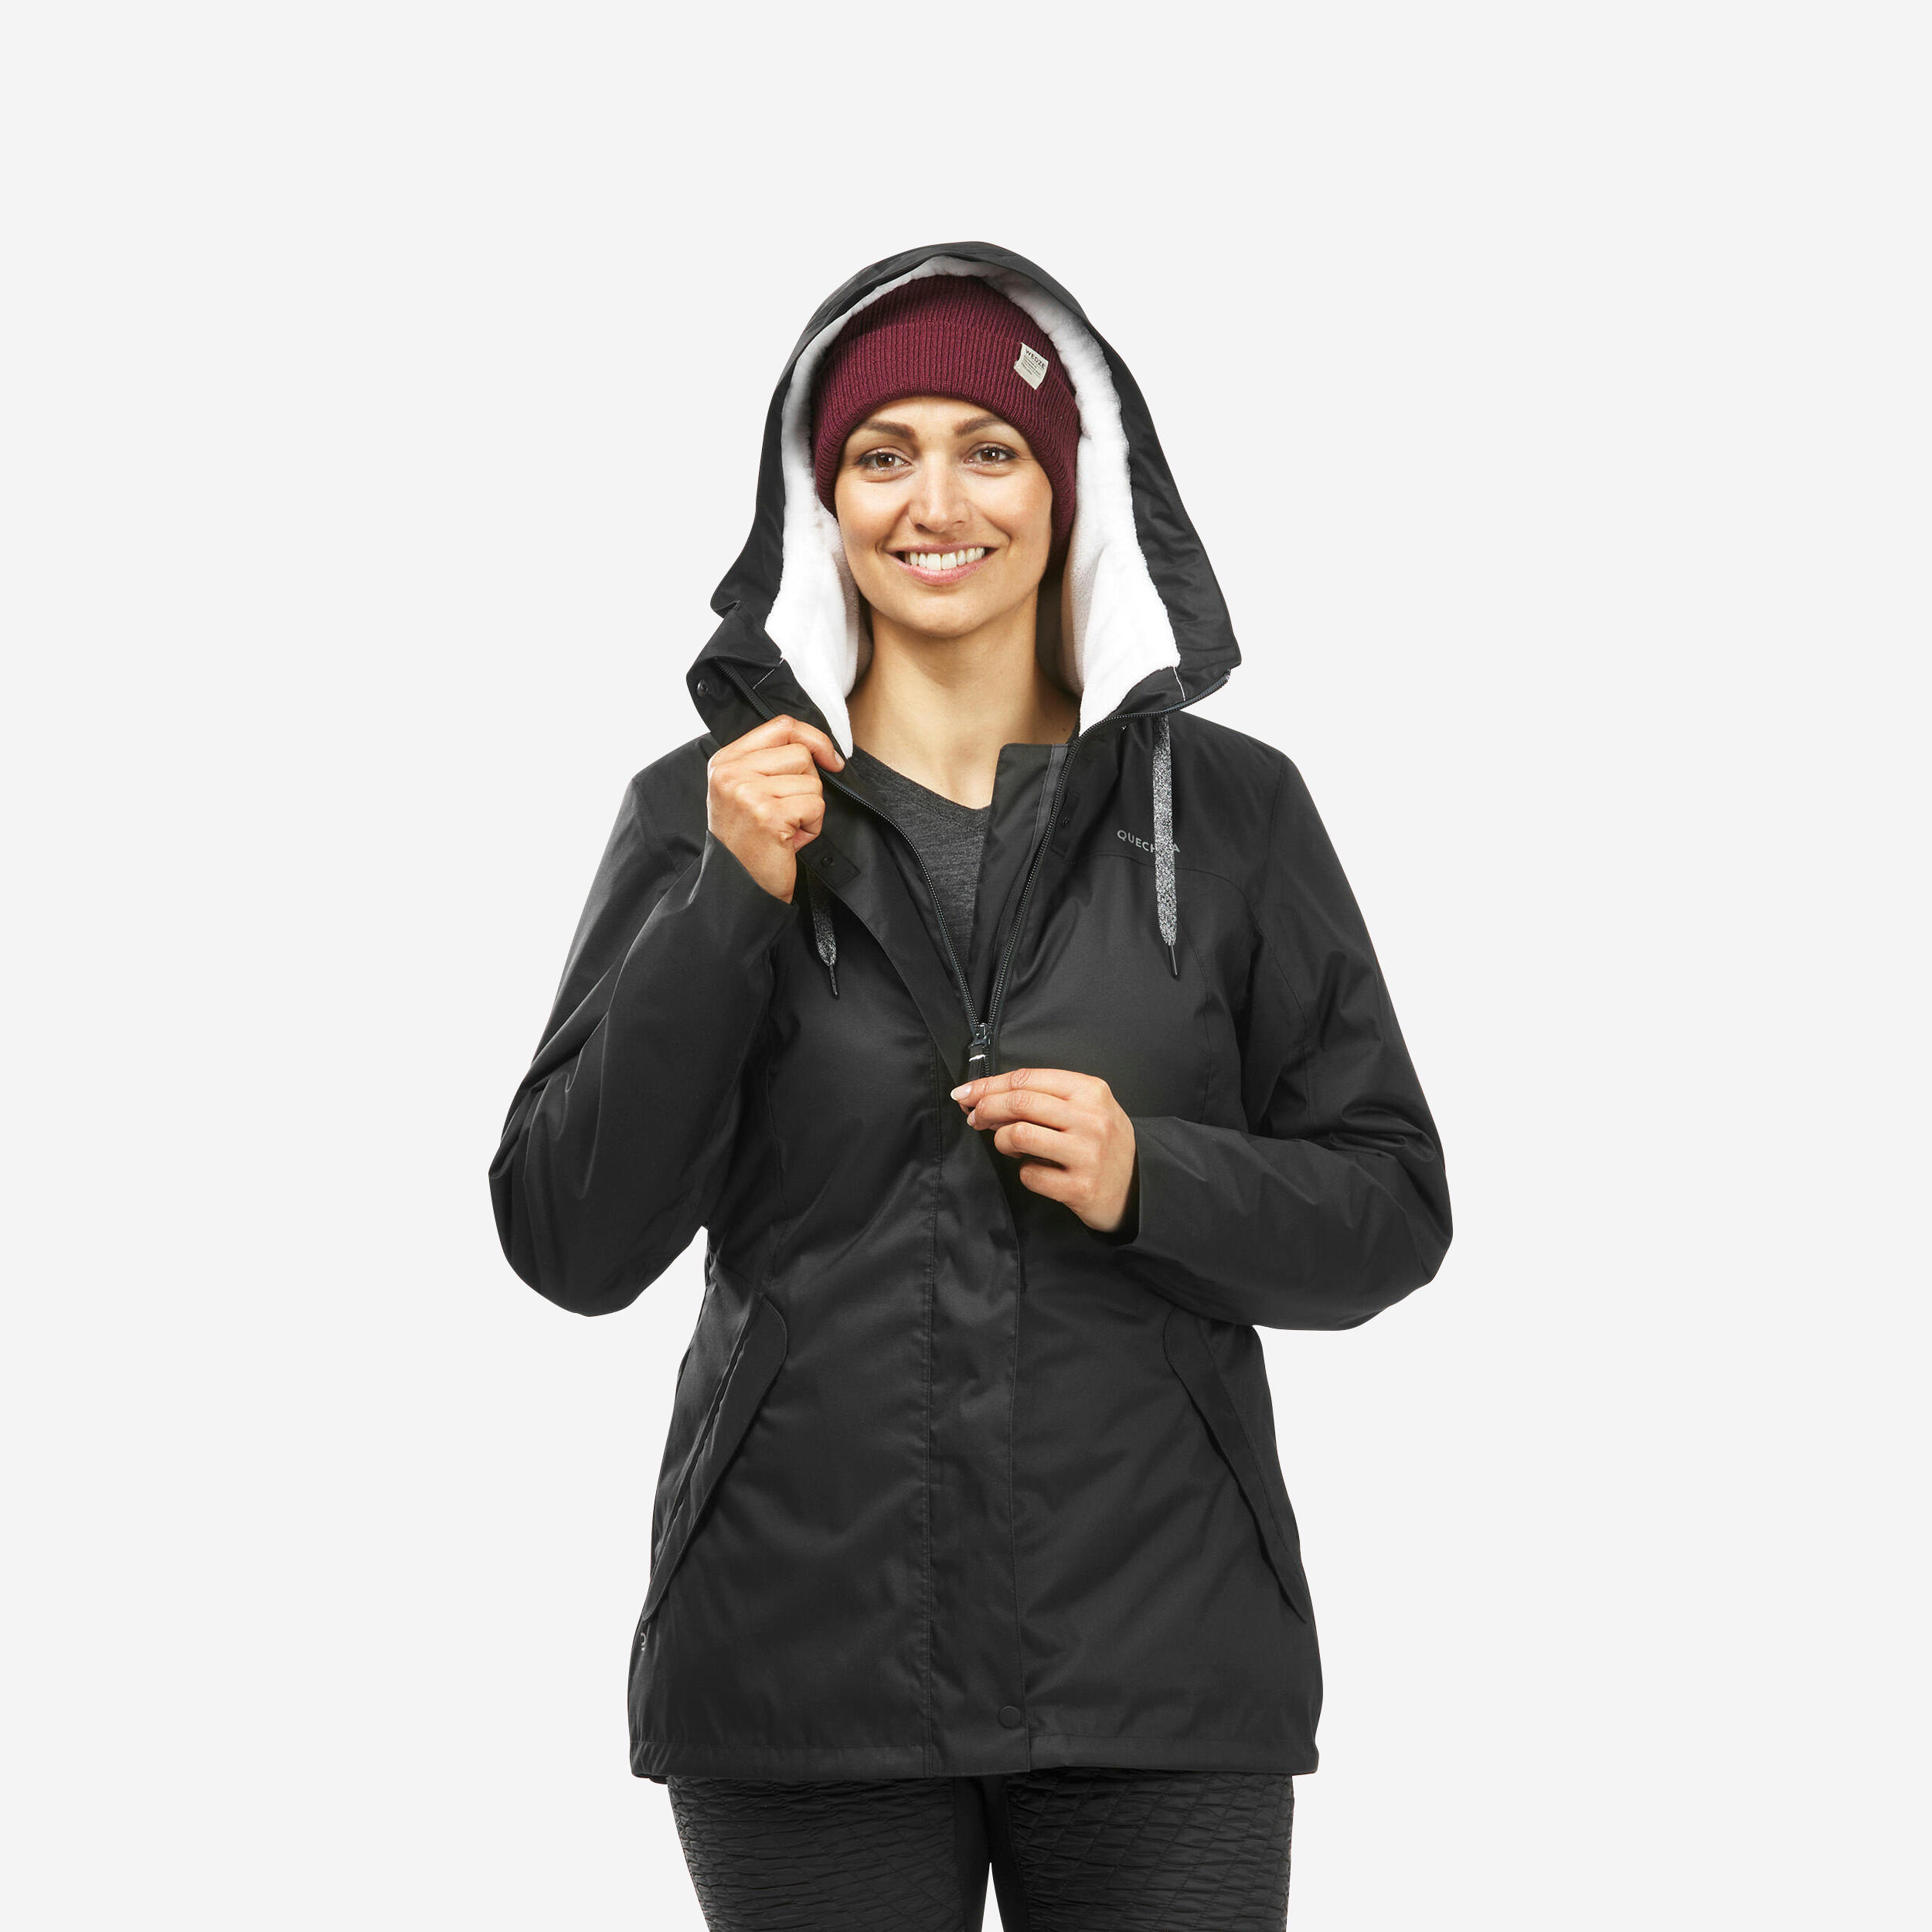 Women’s hiking waterproof winter jacket - SH500 -10°C 1/11